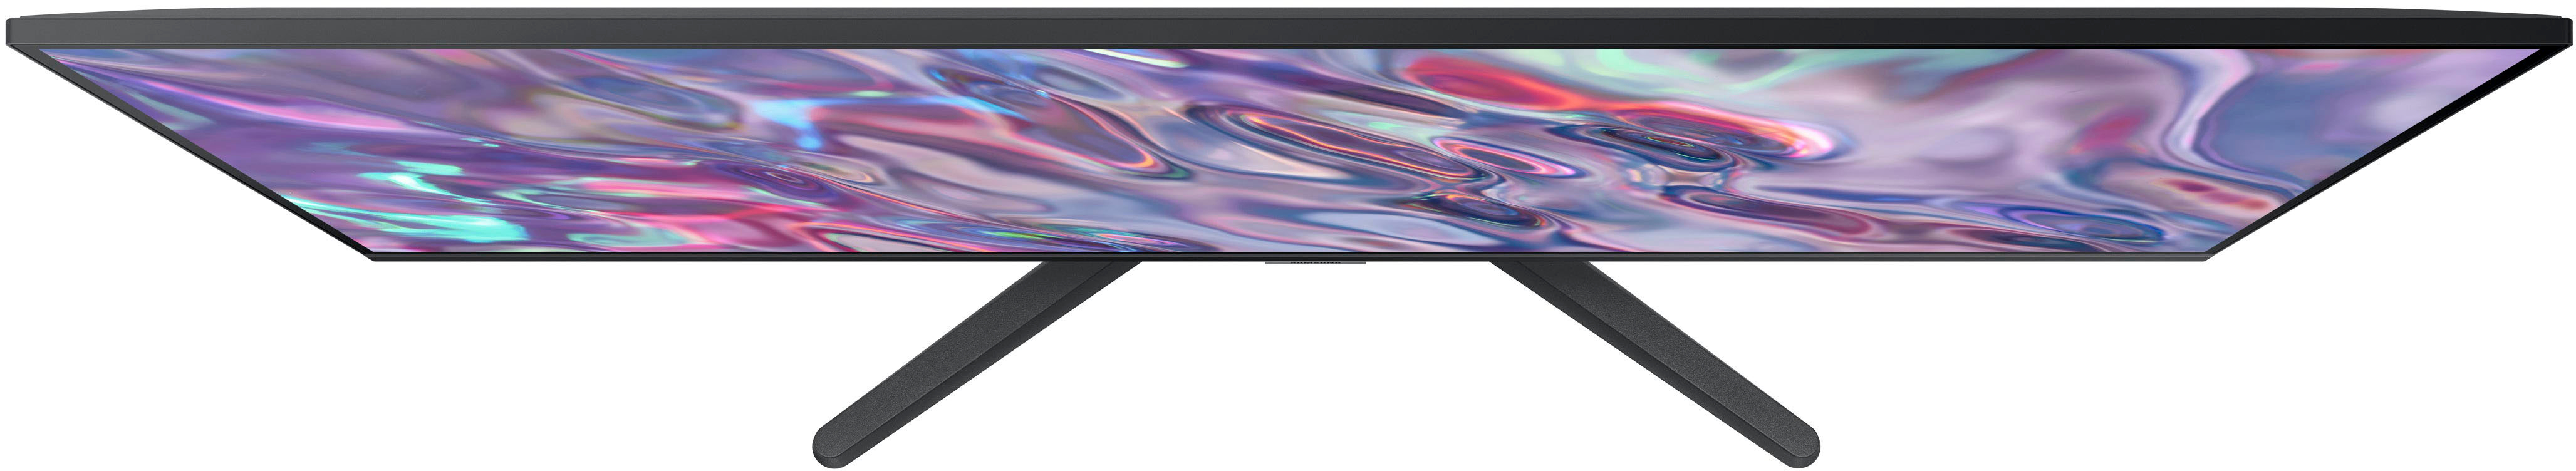 Samsung 34” ViewFinity S5 Ultrawide QHD 100Hz AMD FreeSync Monitor